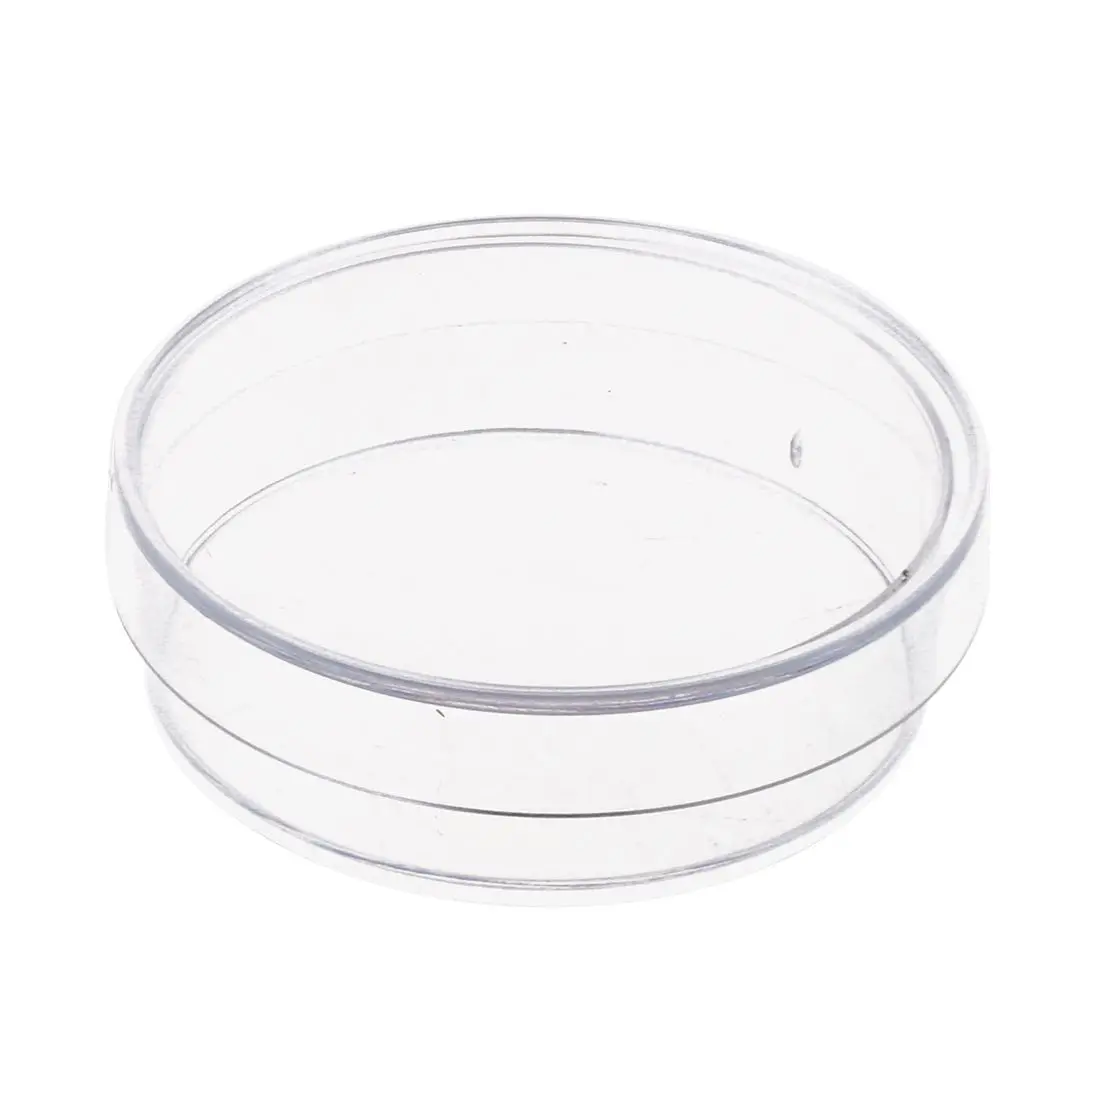 10 шт. 35 мм х 10 мм стерильные пластиковые чашки Петри с крышкой для LB плиты дрожжей (прозрачный цвет)